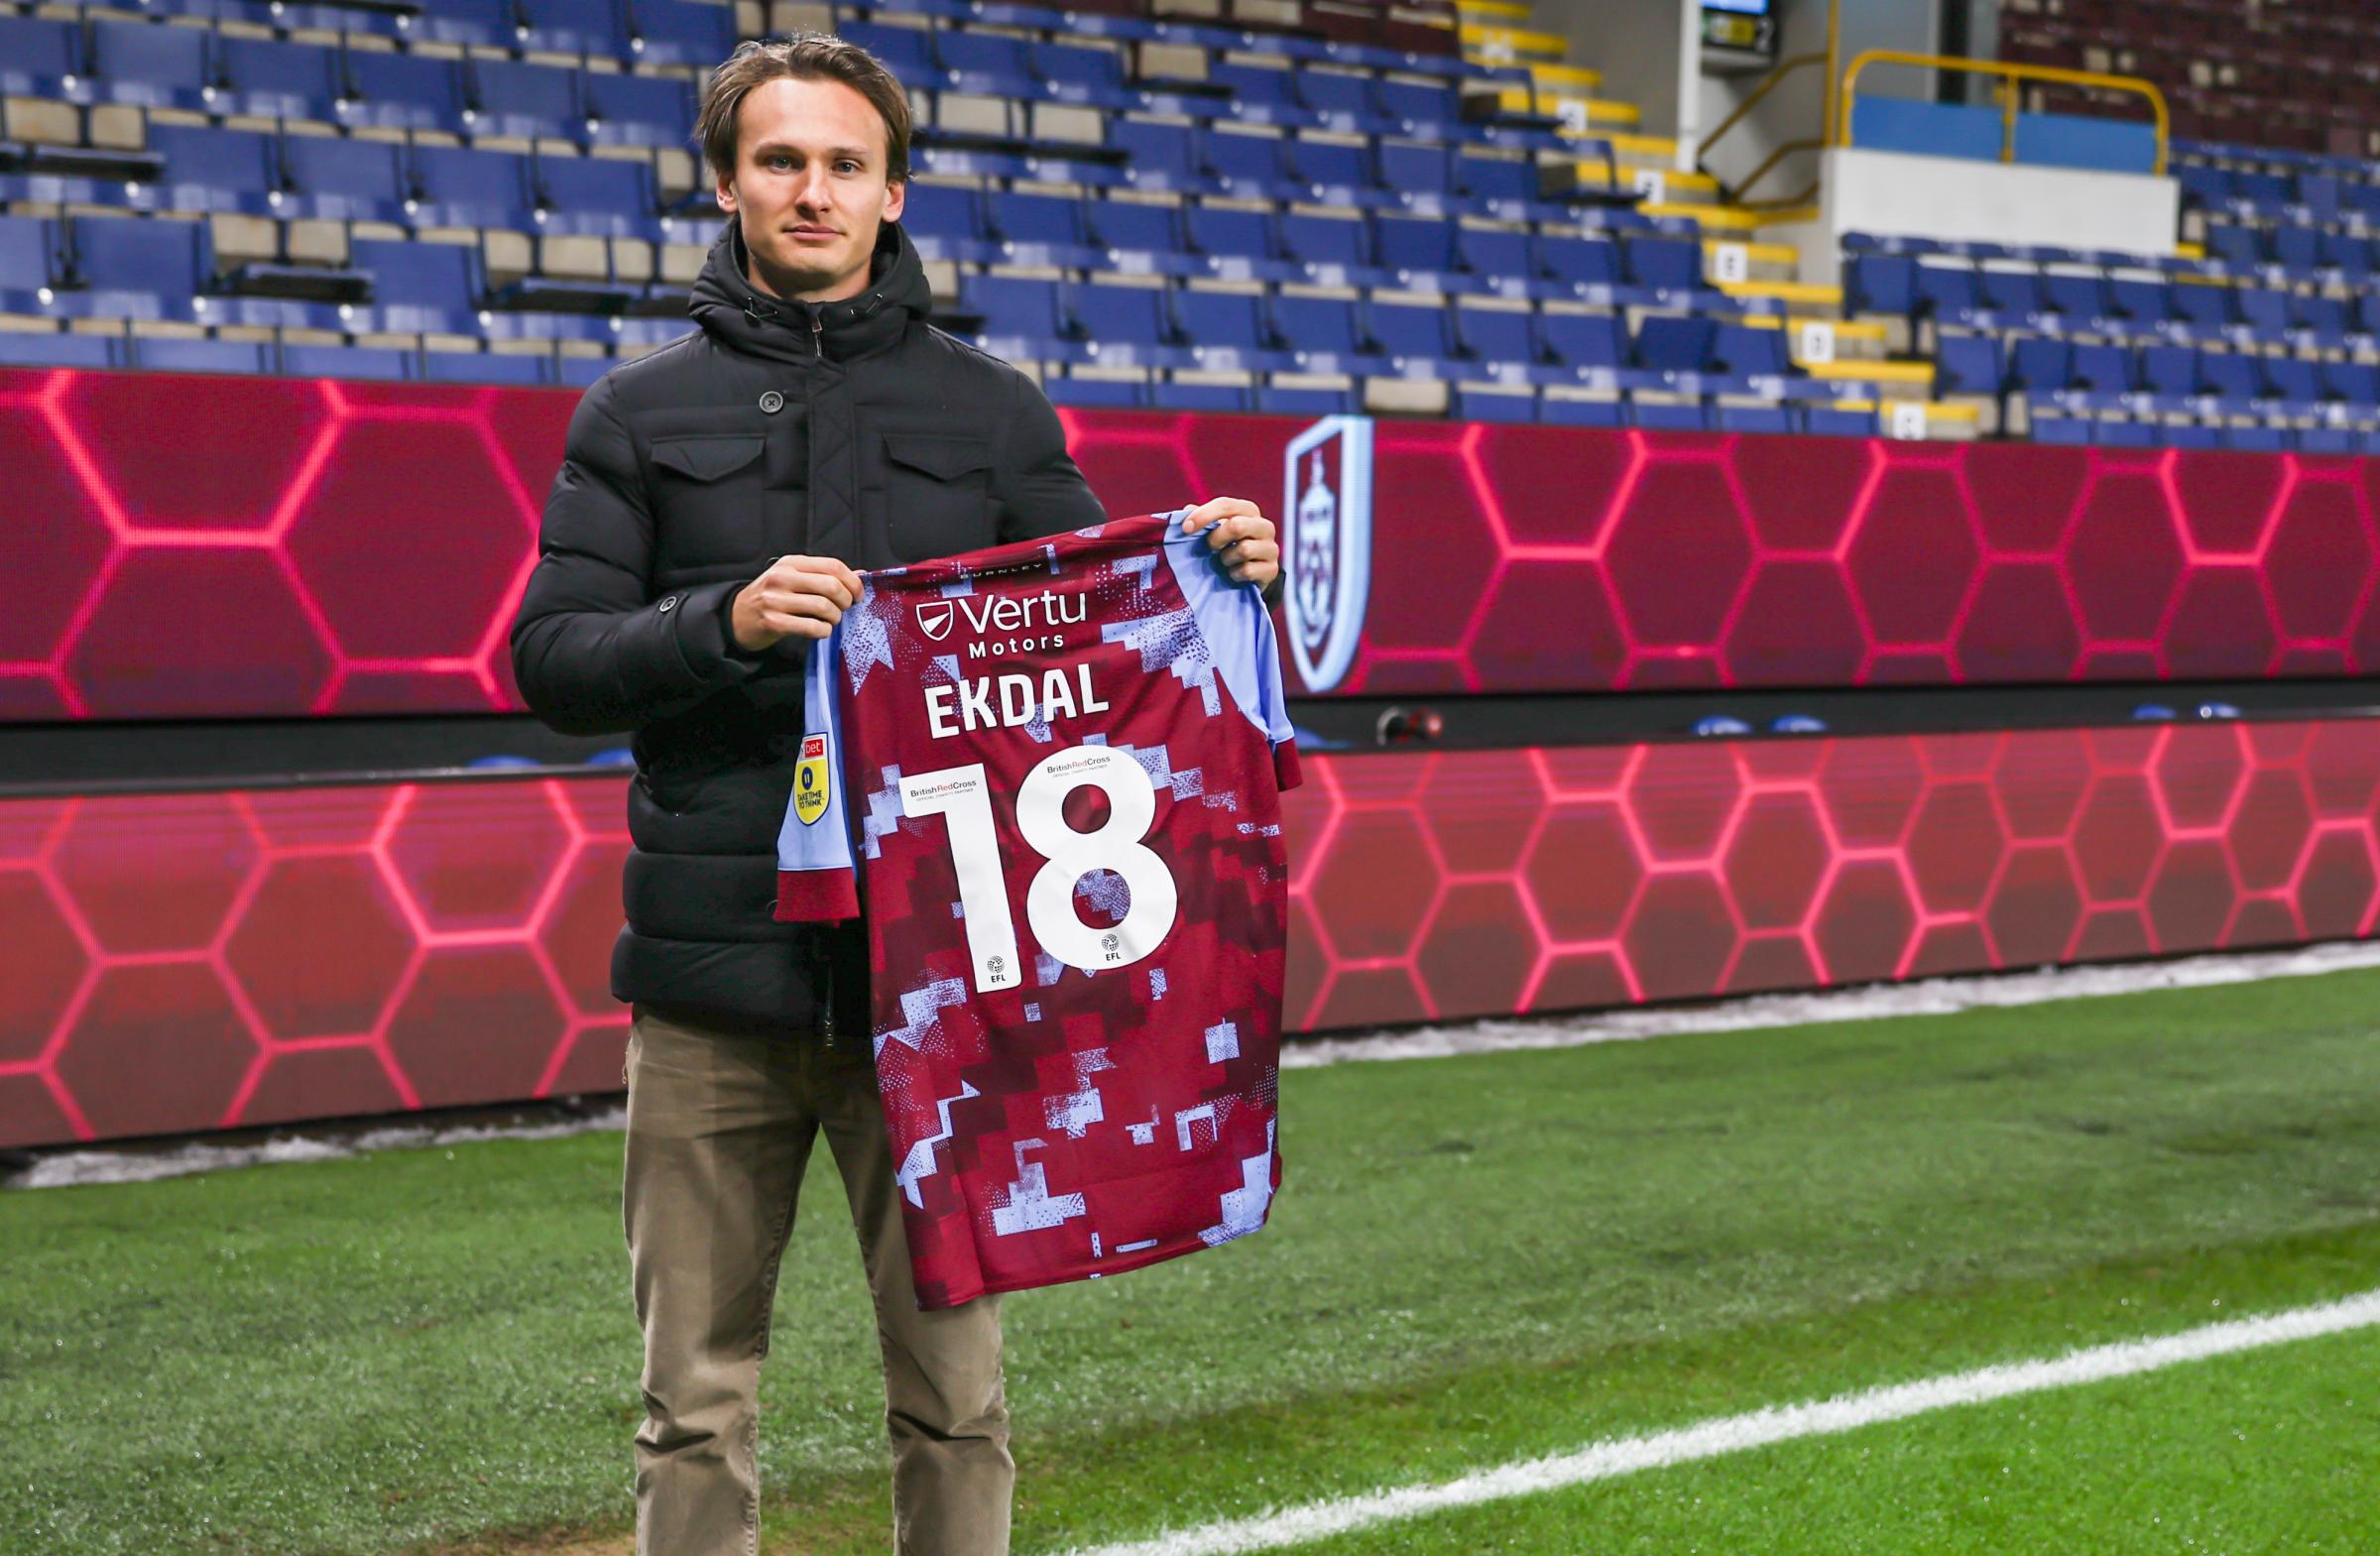 Burnley sign Sweden U21 defender Hjalmar Ekdal from Djurgarden IF